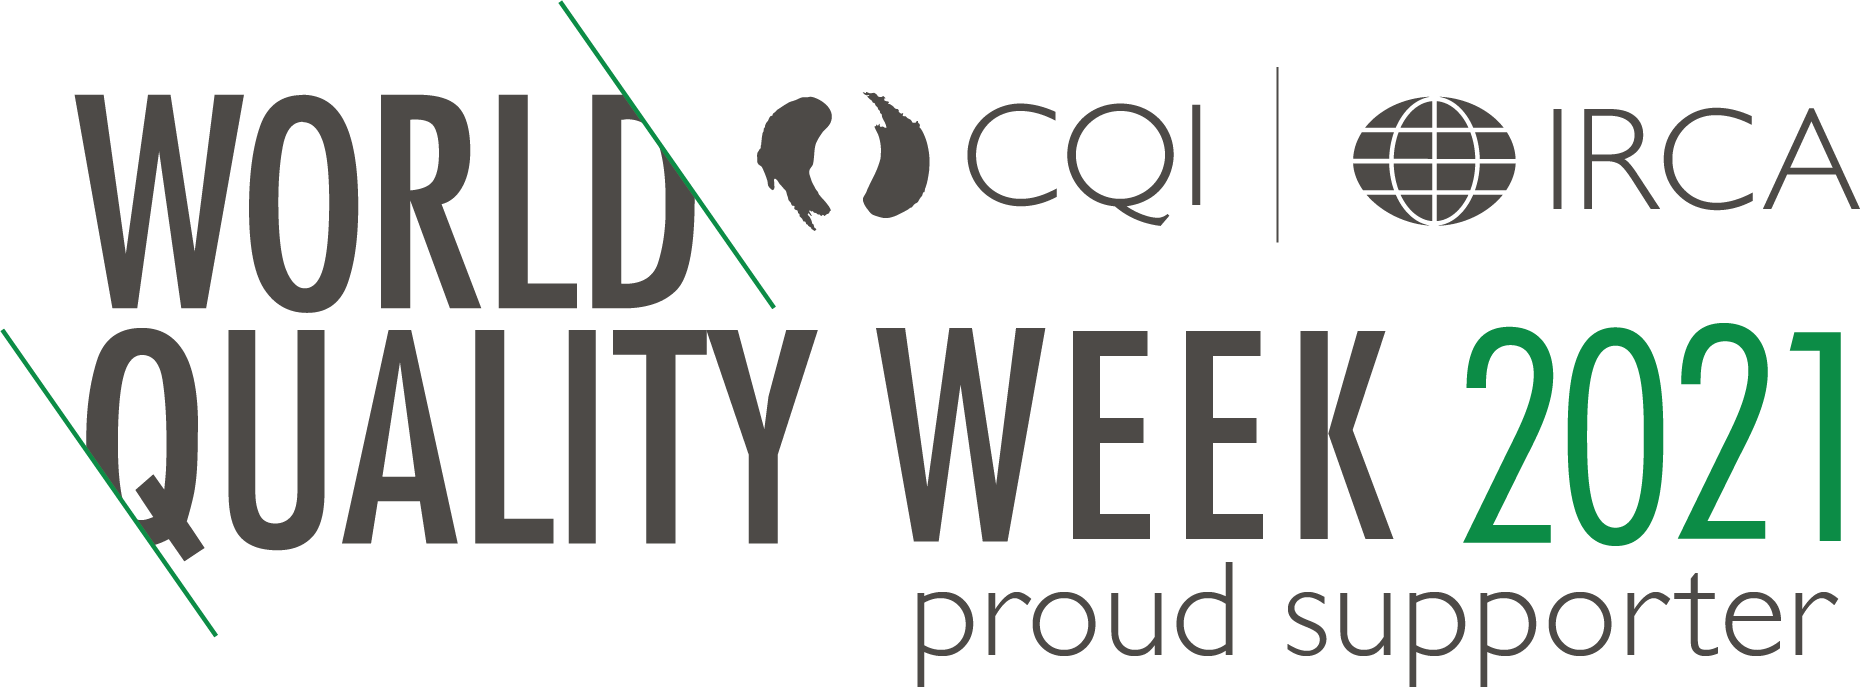 Celebrating World Quality Week image